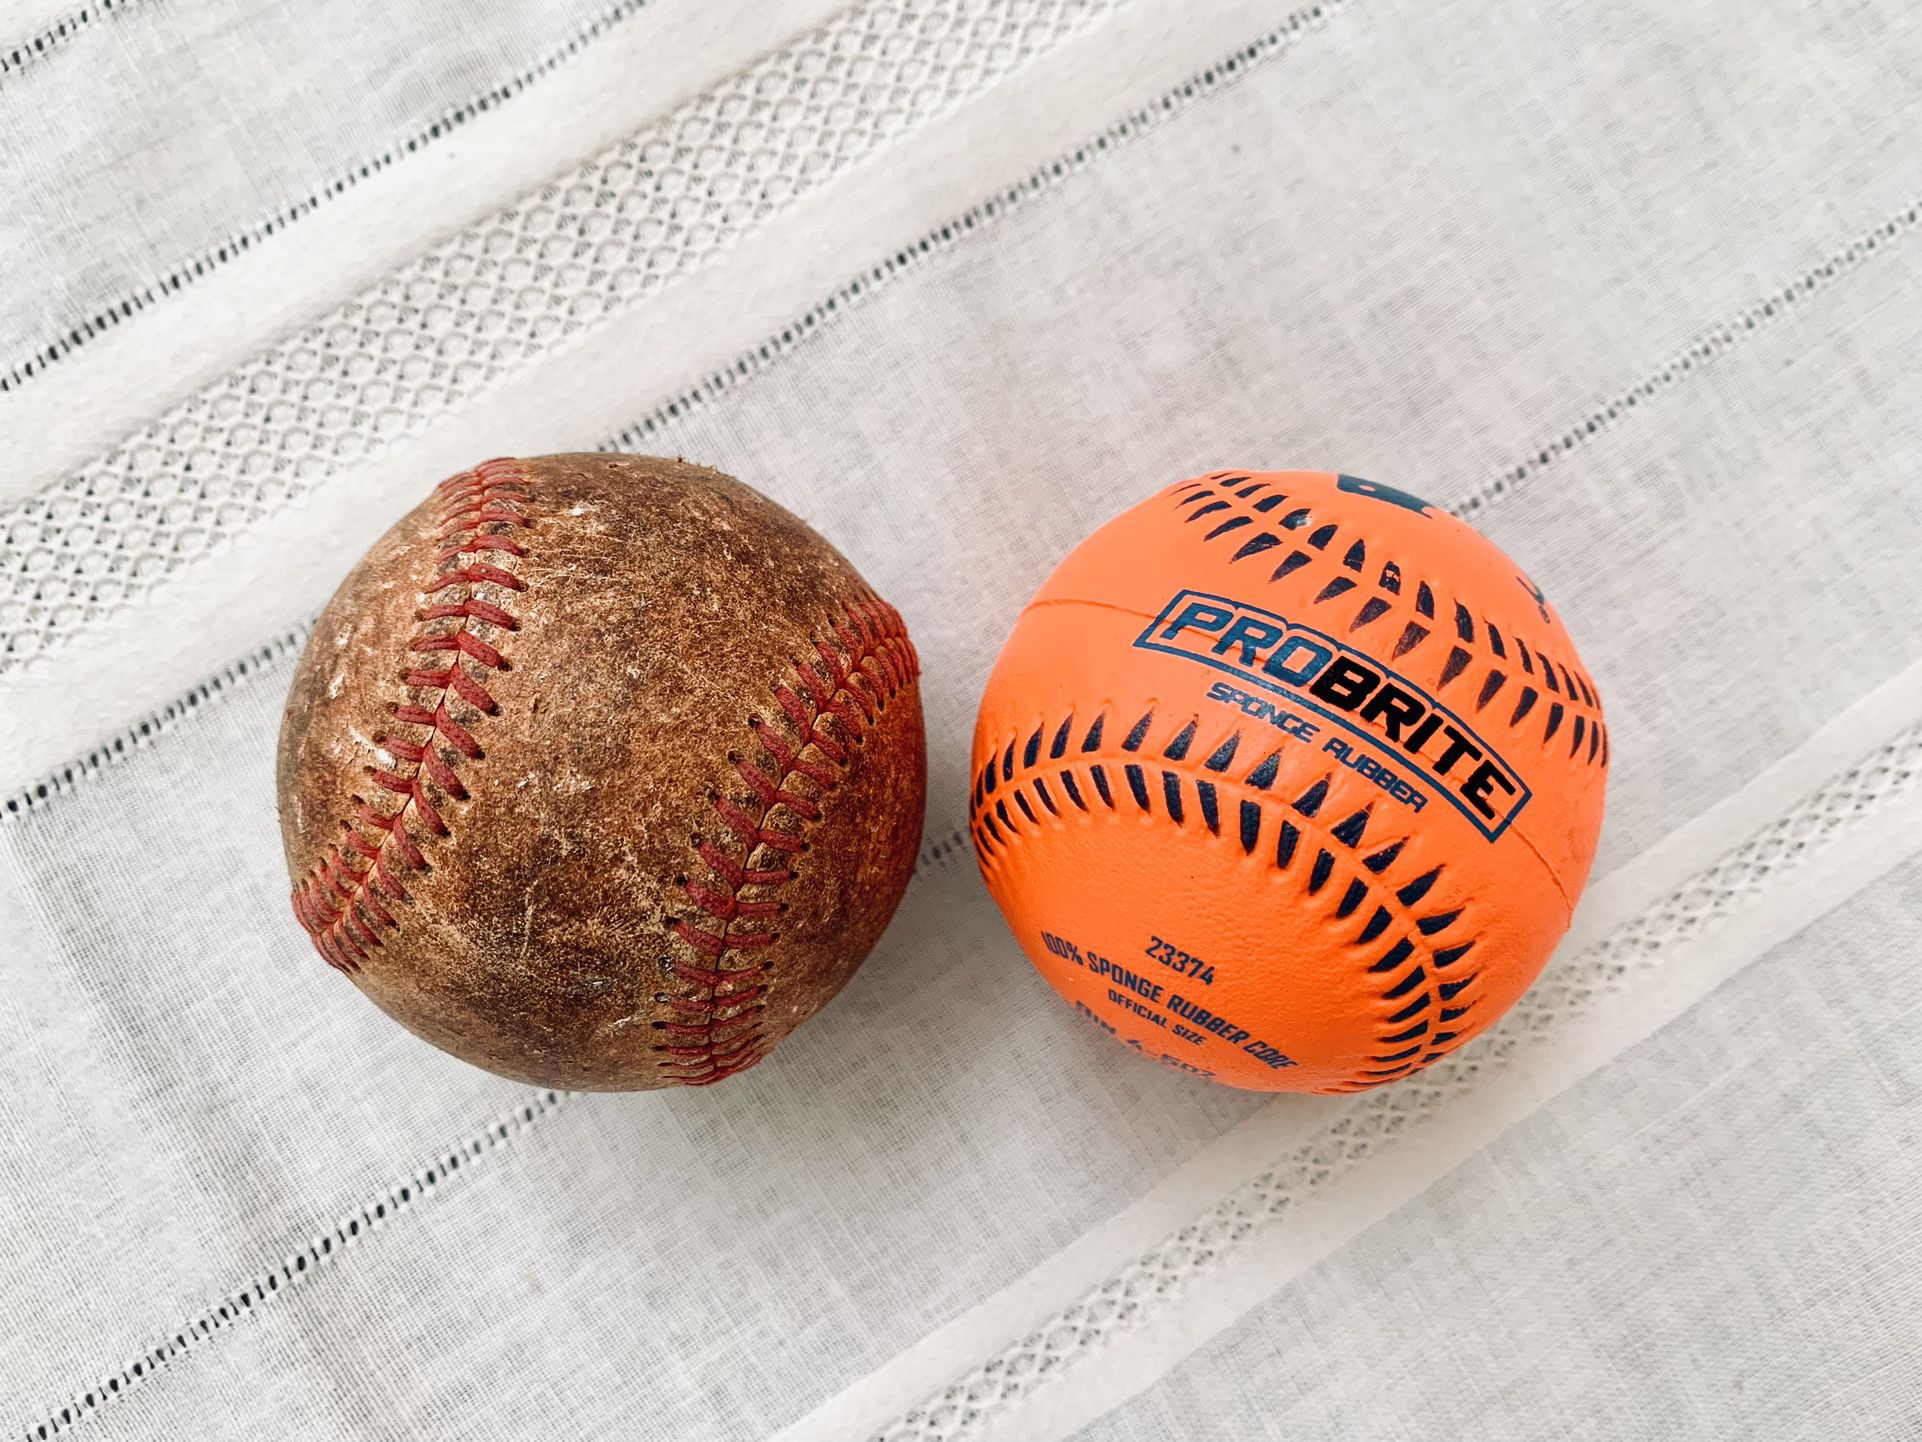 PROBRITE Neon Orange Sponge Rubber Baseball & A Regular Leather Baseball 